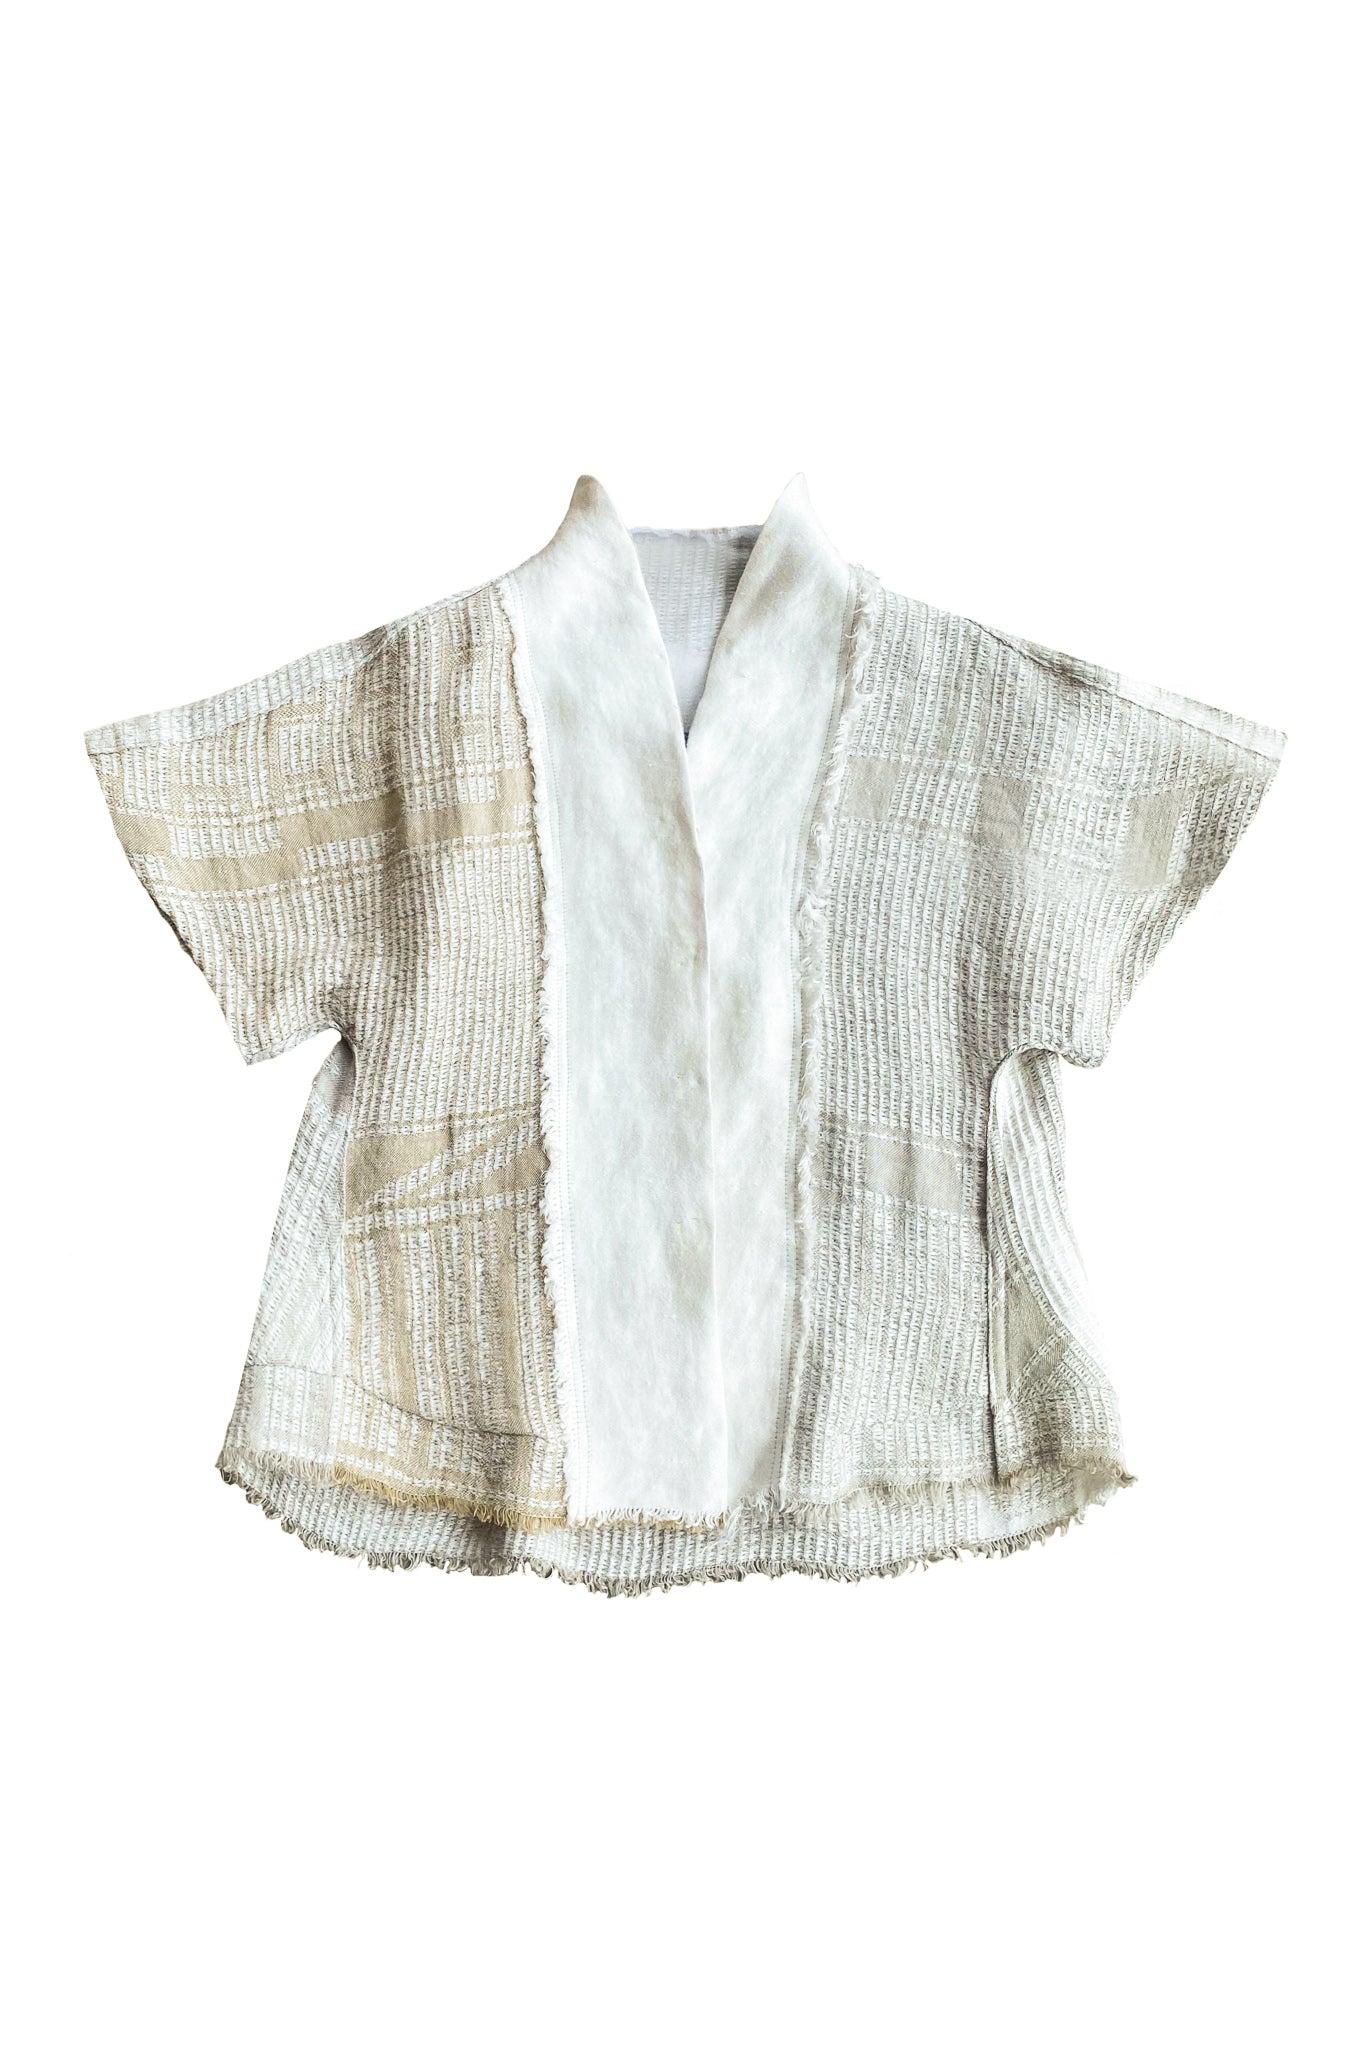 Locally Woven, Jacquard Kimono Wrap Top